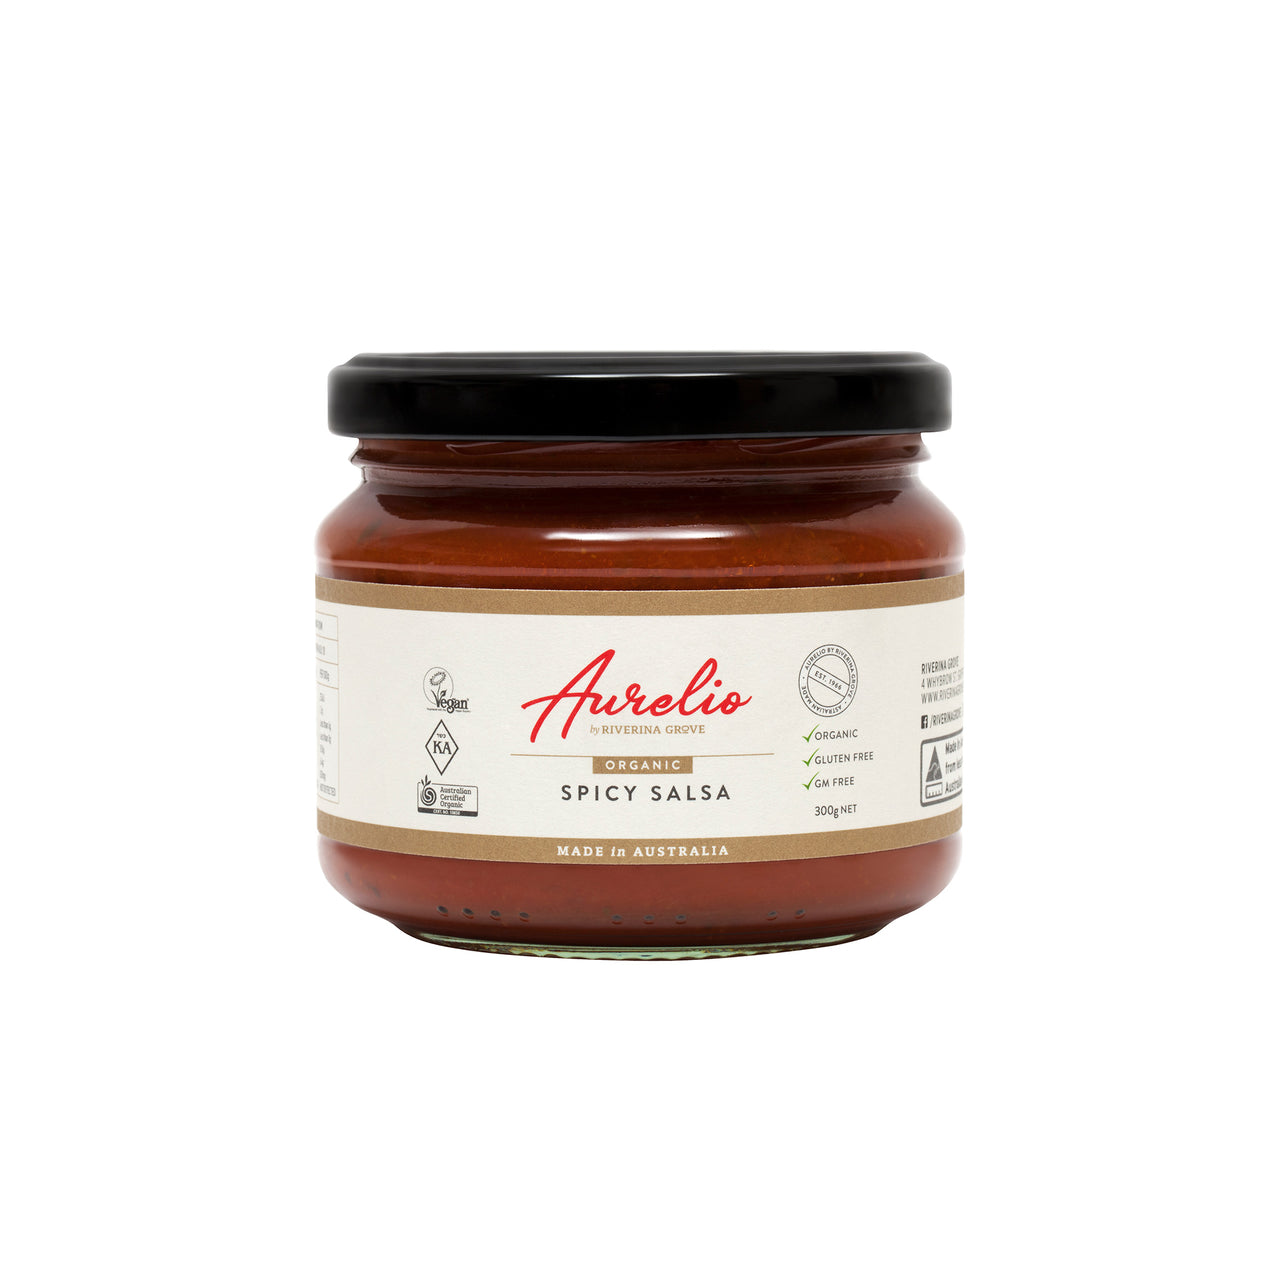 Aurelio - Organic Spicy Salsa - [300g]